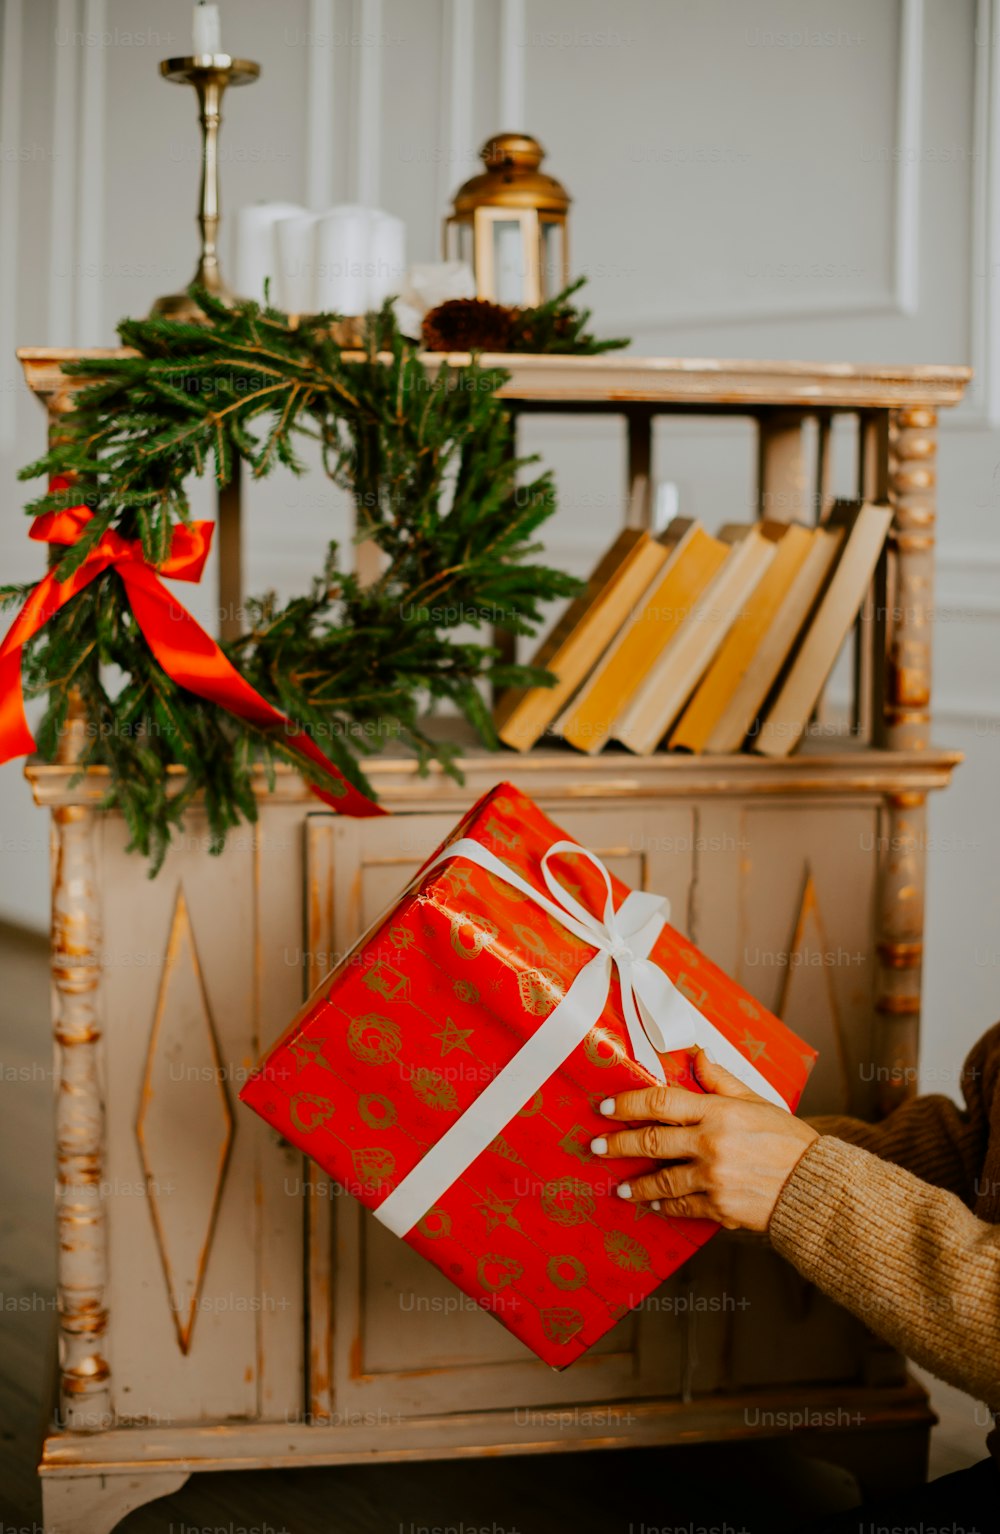 Una mujer sosteniendo una caja de regalo roja frente a un árbol de Navidad